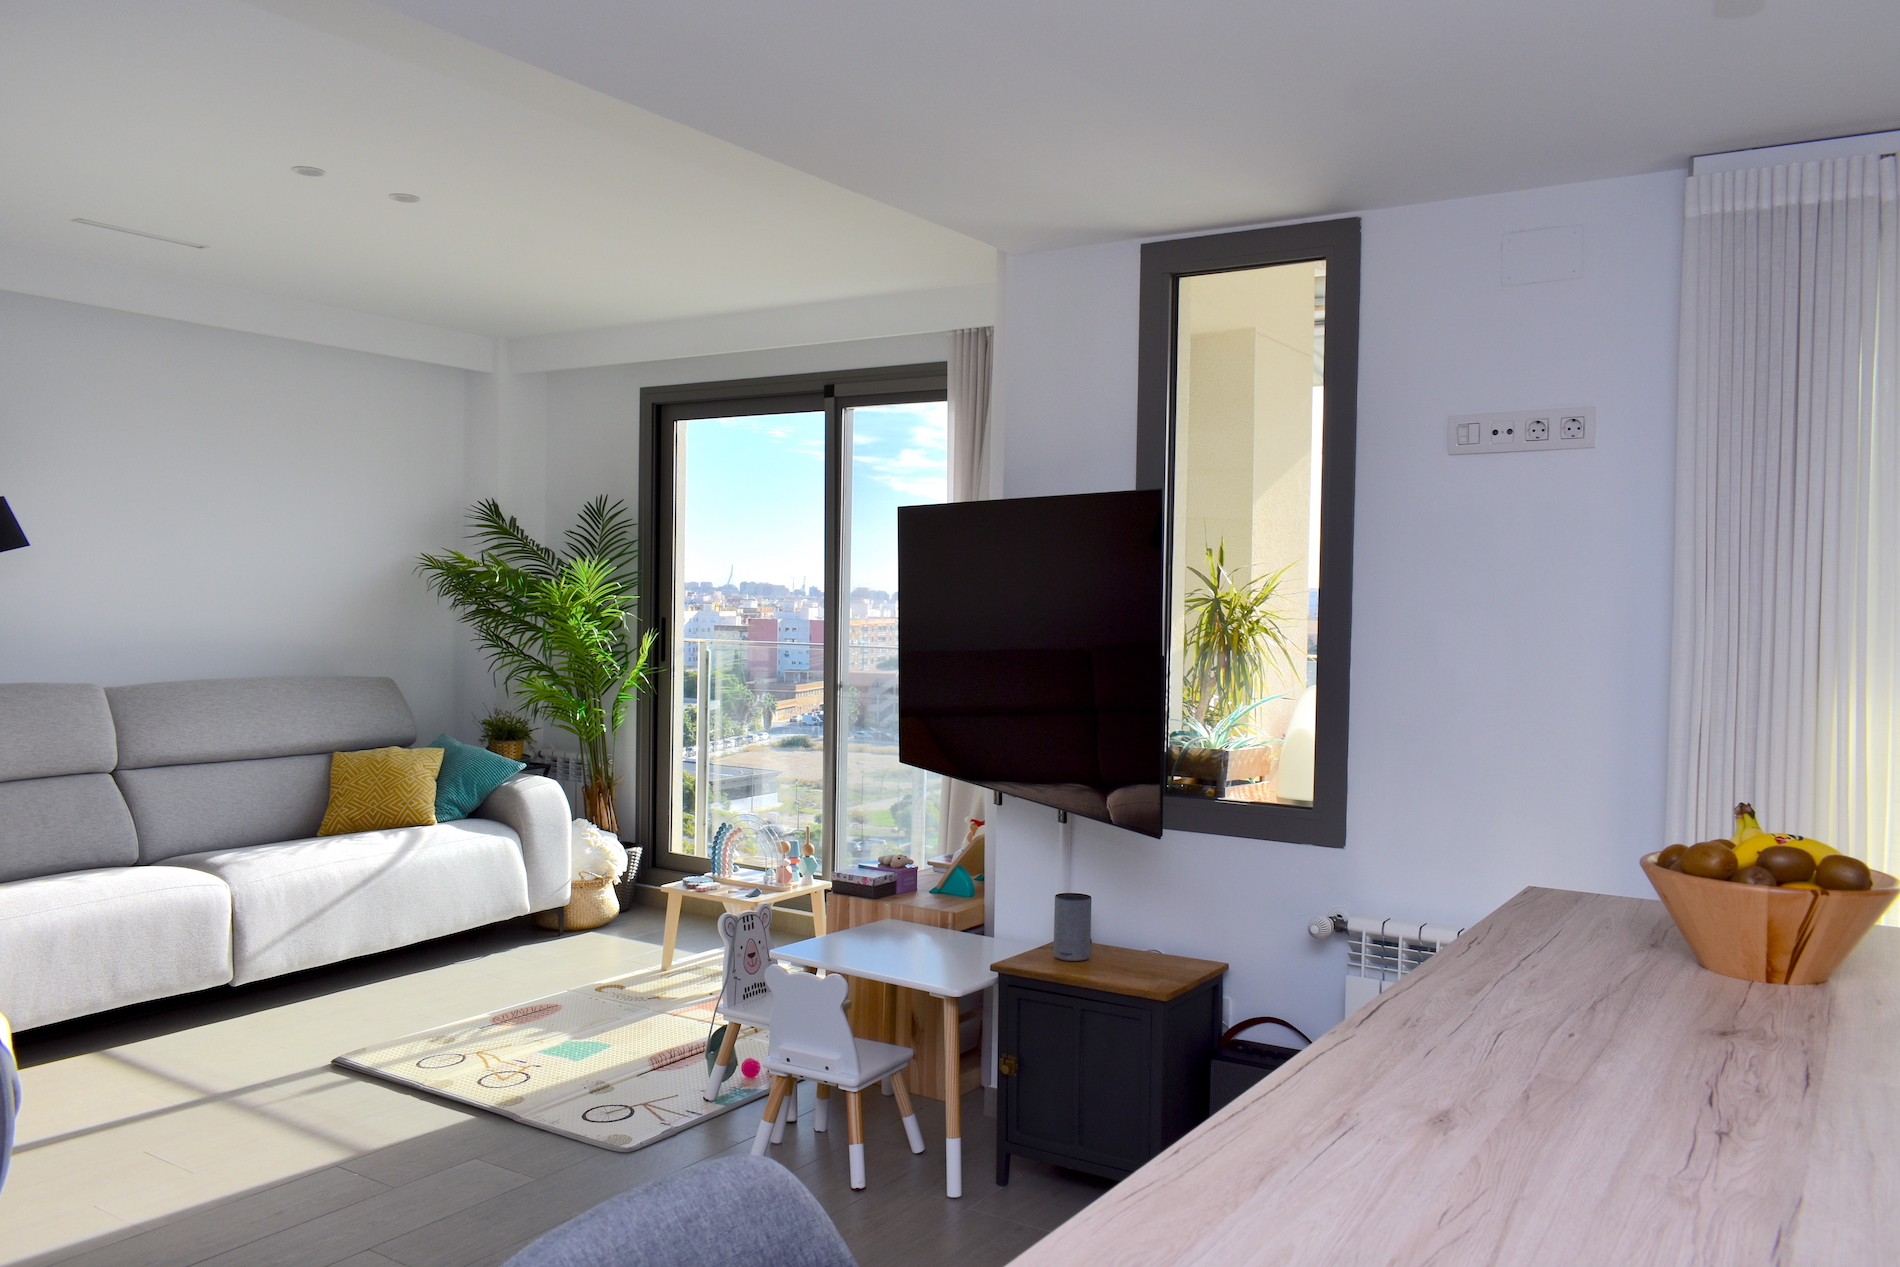 Erstaunliche moderne Wohnung mit atemberaubender Aussicht in Valencia